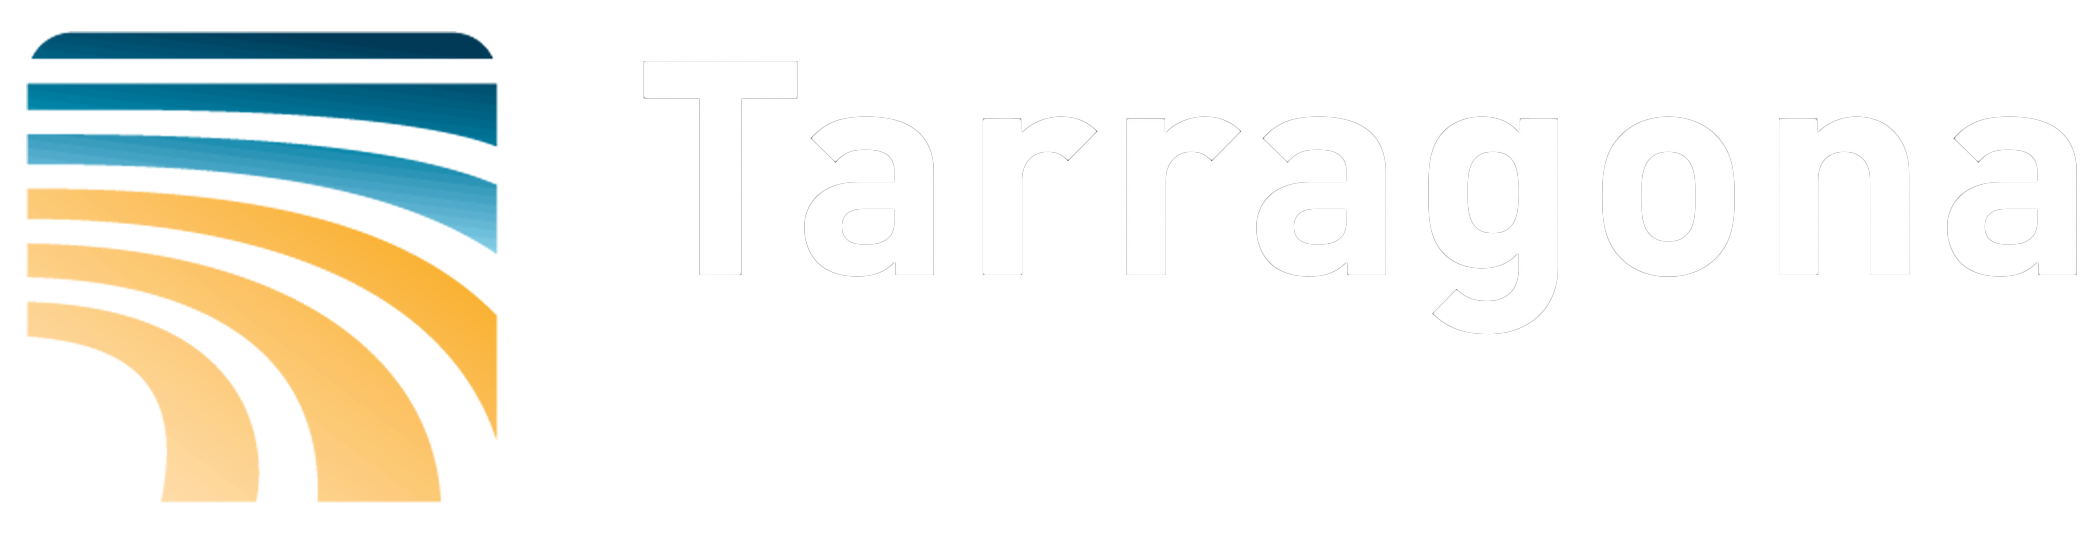 tarragonaexperience